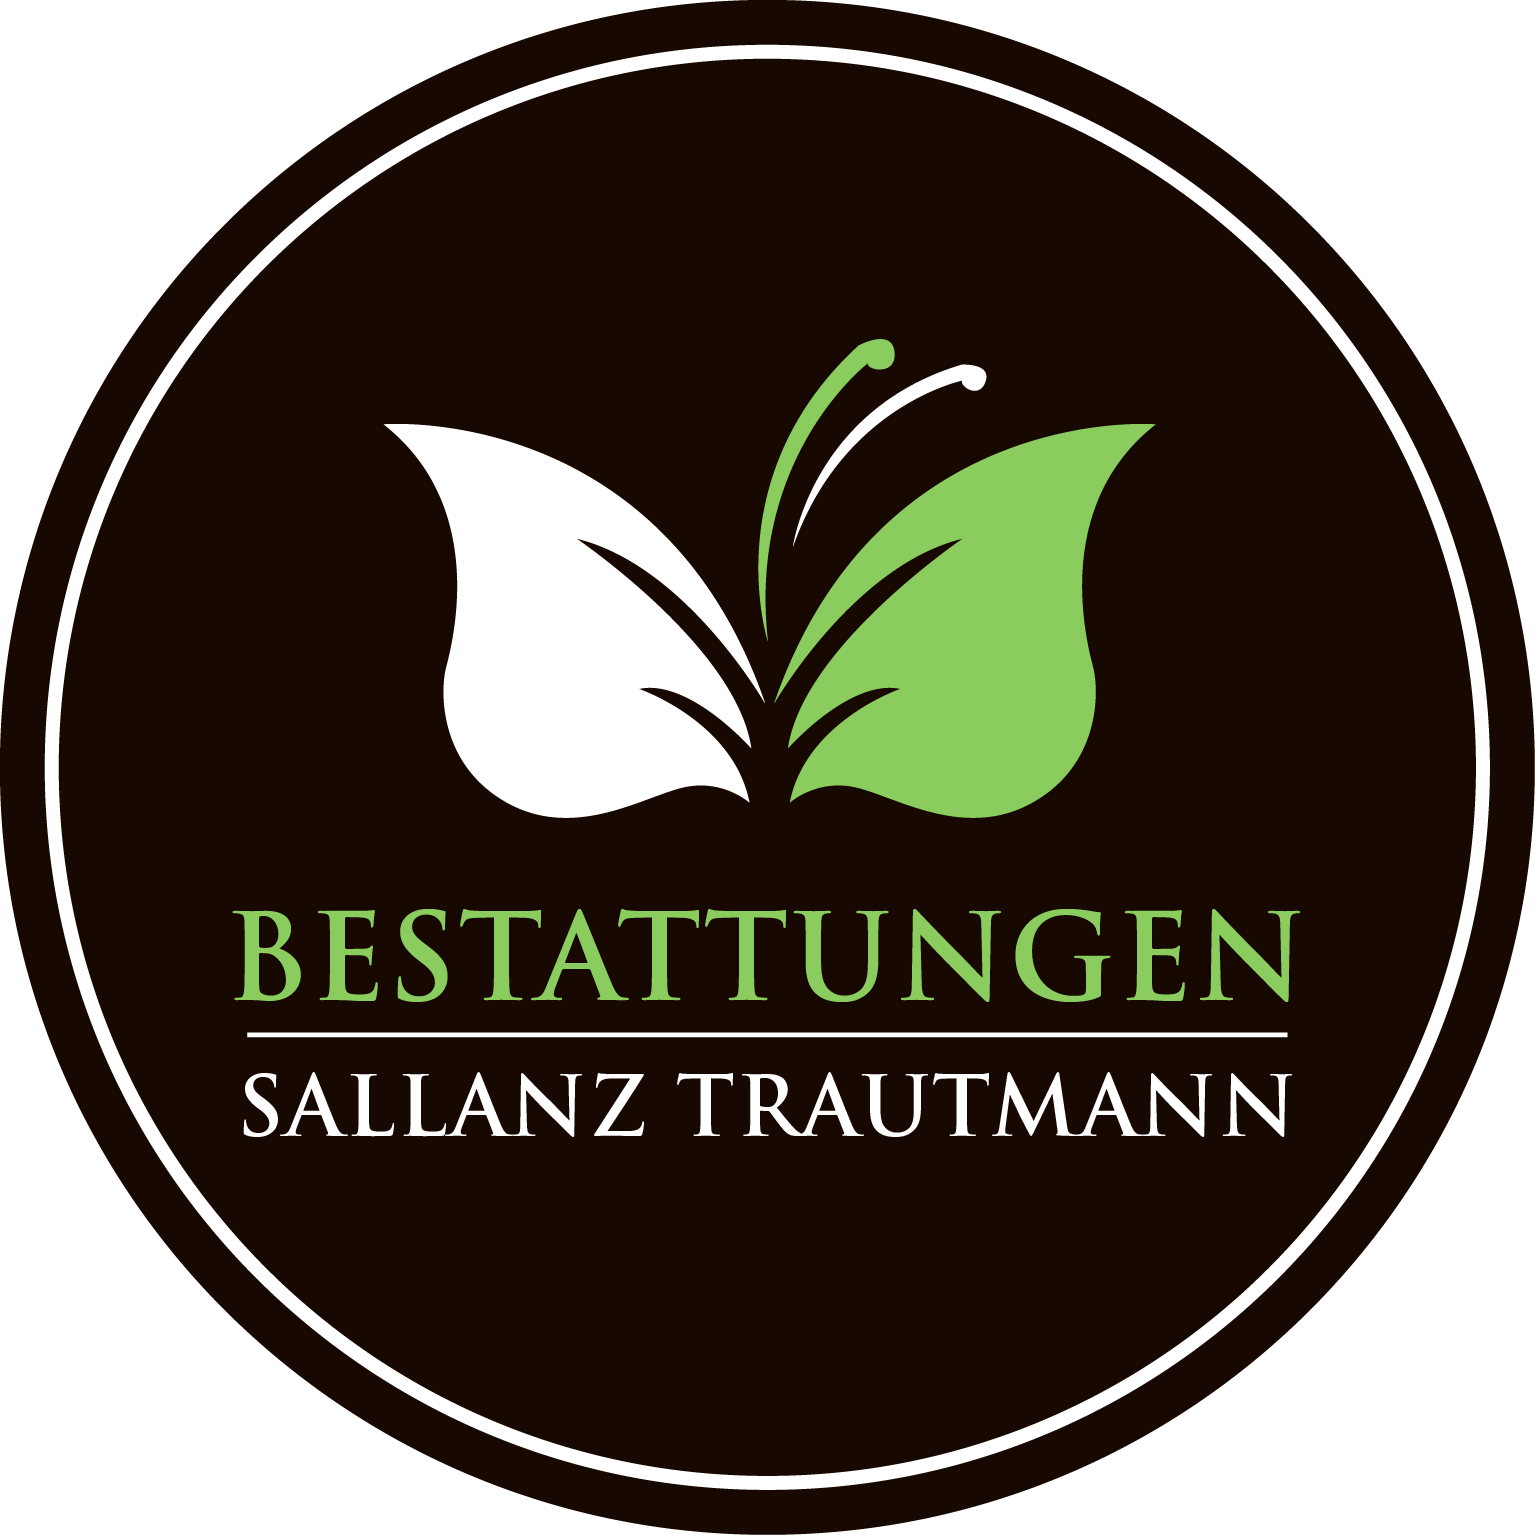 Bild 1 Bestattungen Sallanz Trautmann in Sinsheim